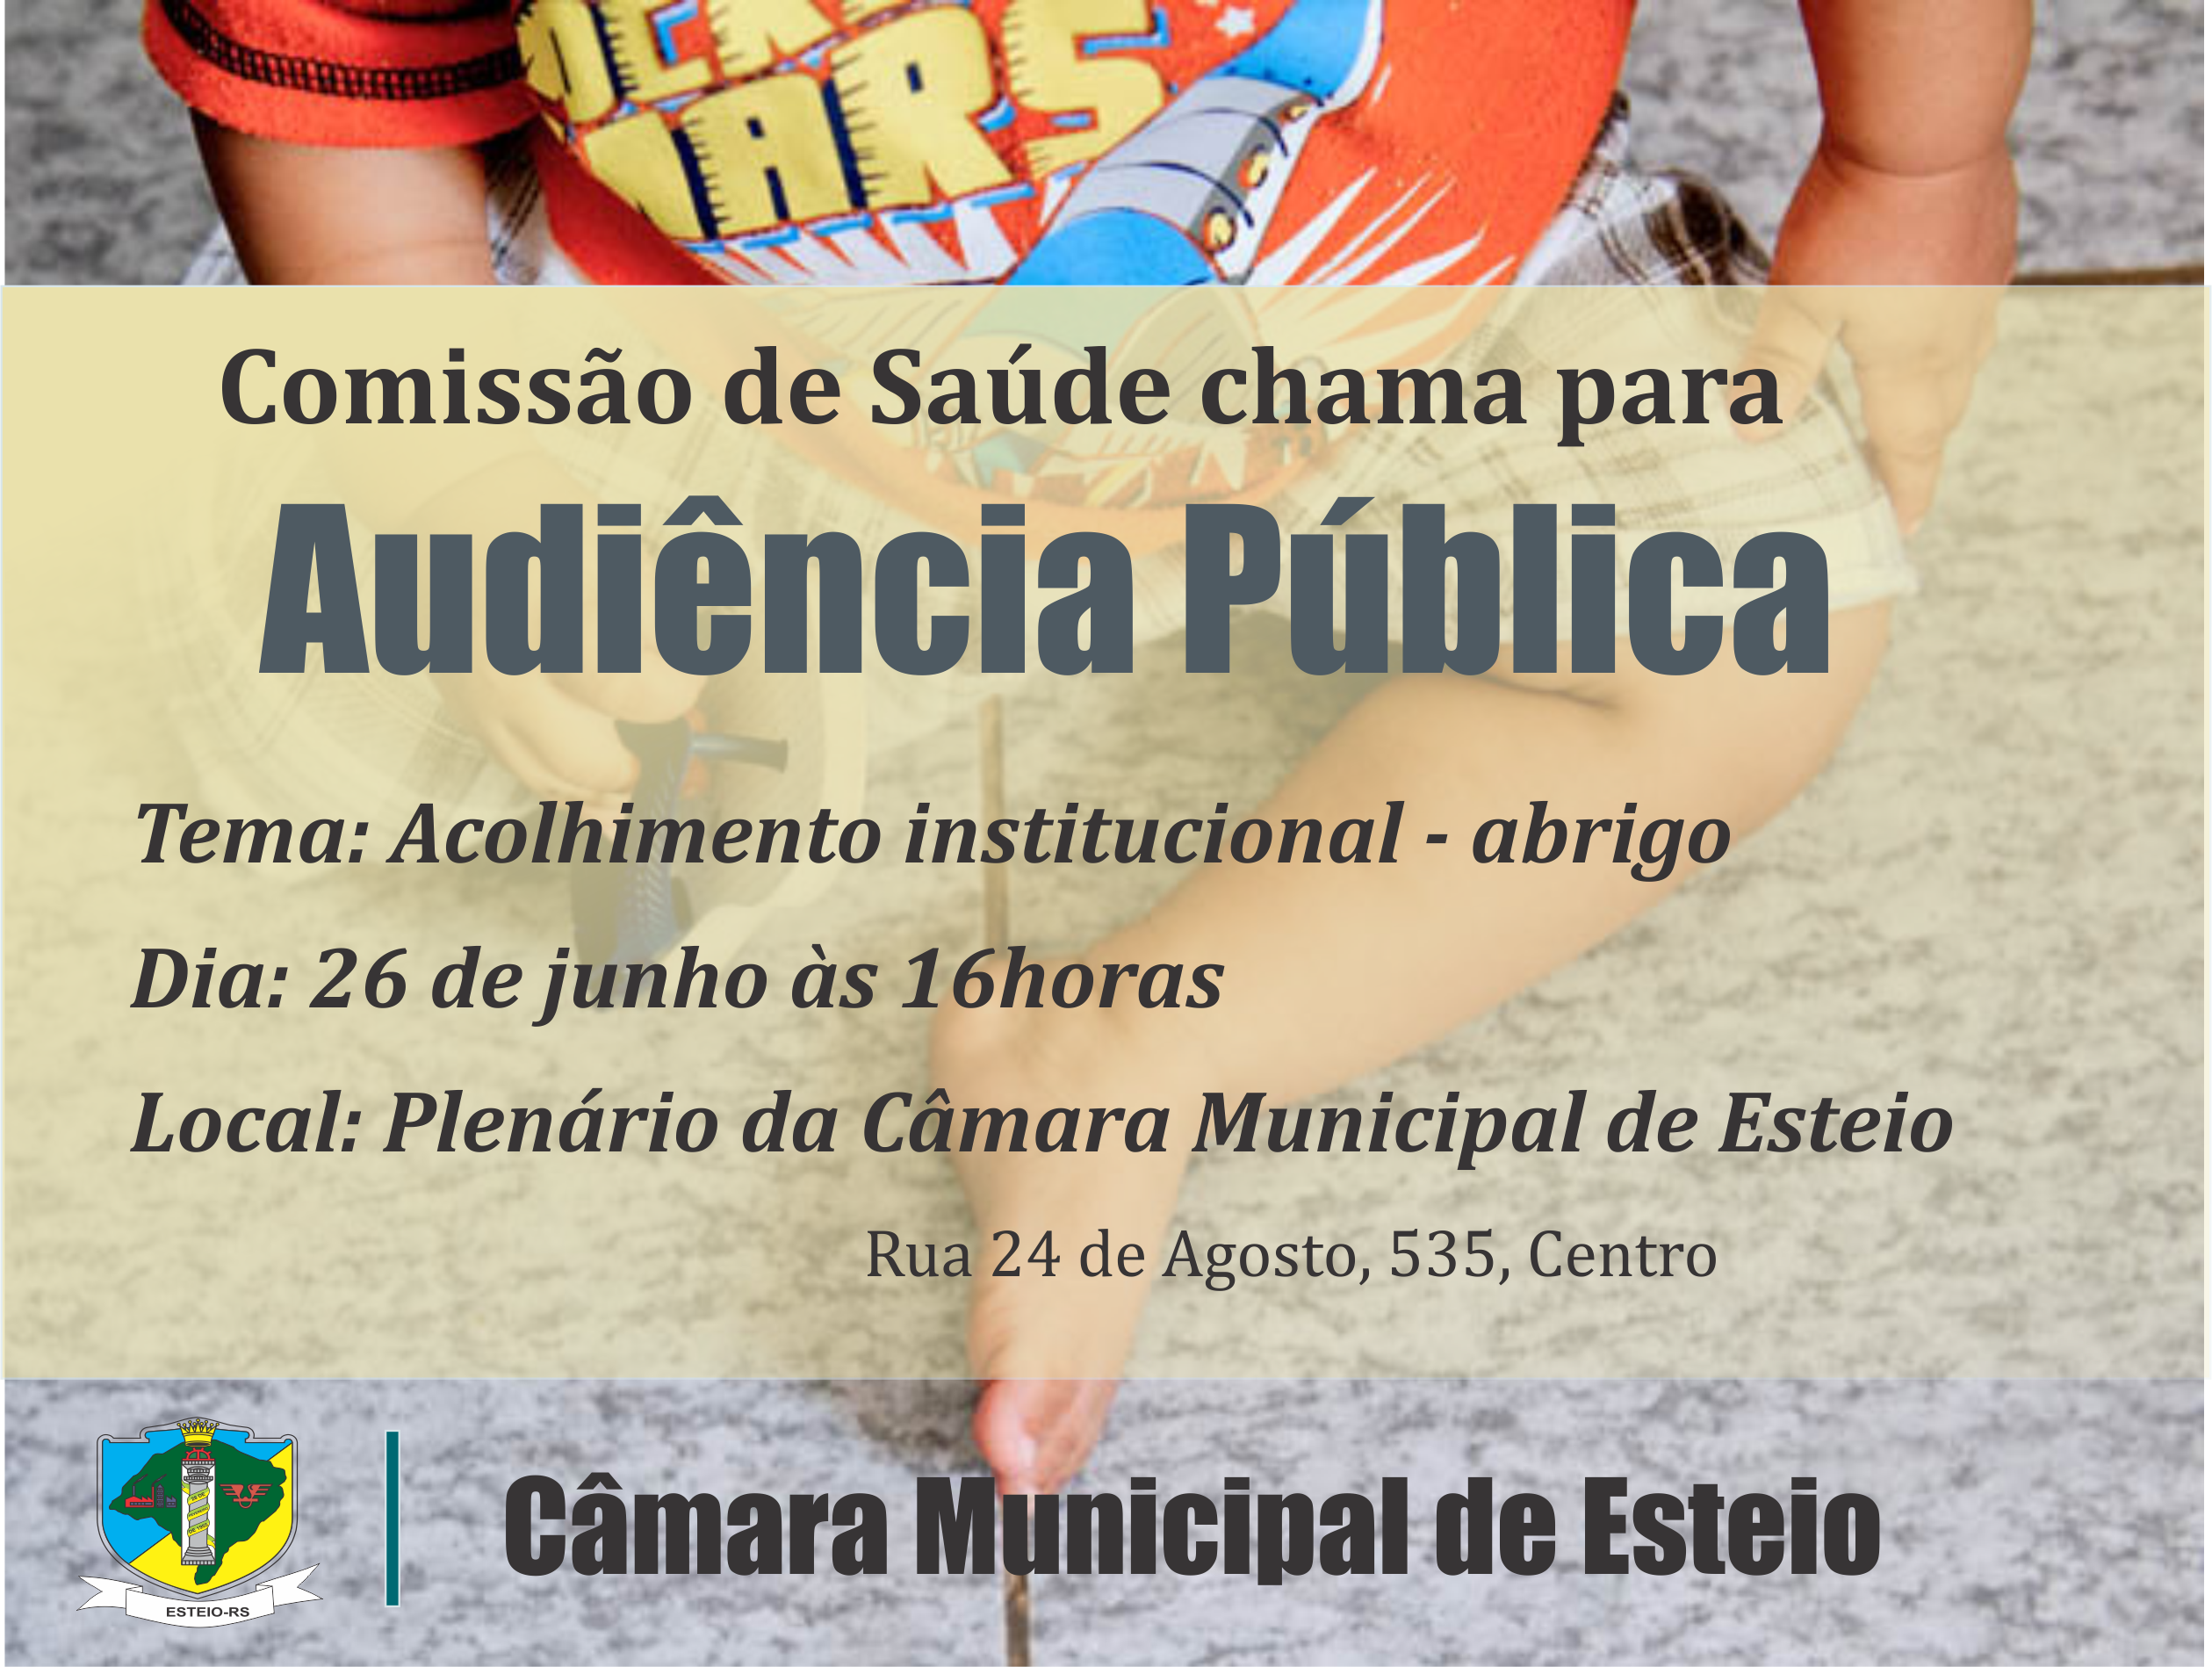  Audiência Pública vai debater projeto de convênio com Canoas para disponibilizar vagas em abrigo de Esteio segunda-feira, 26